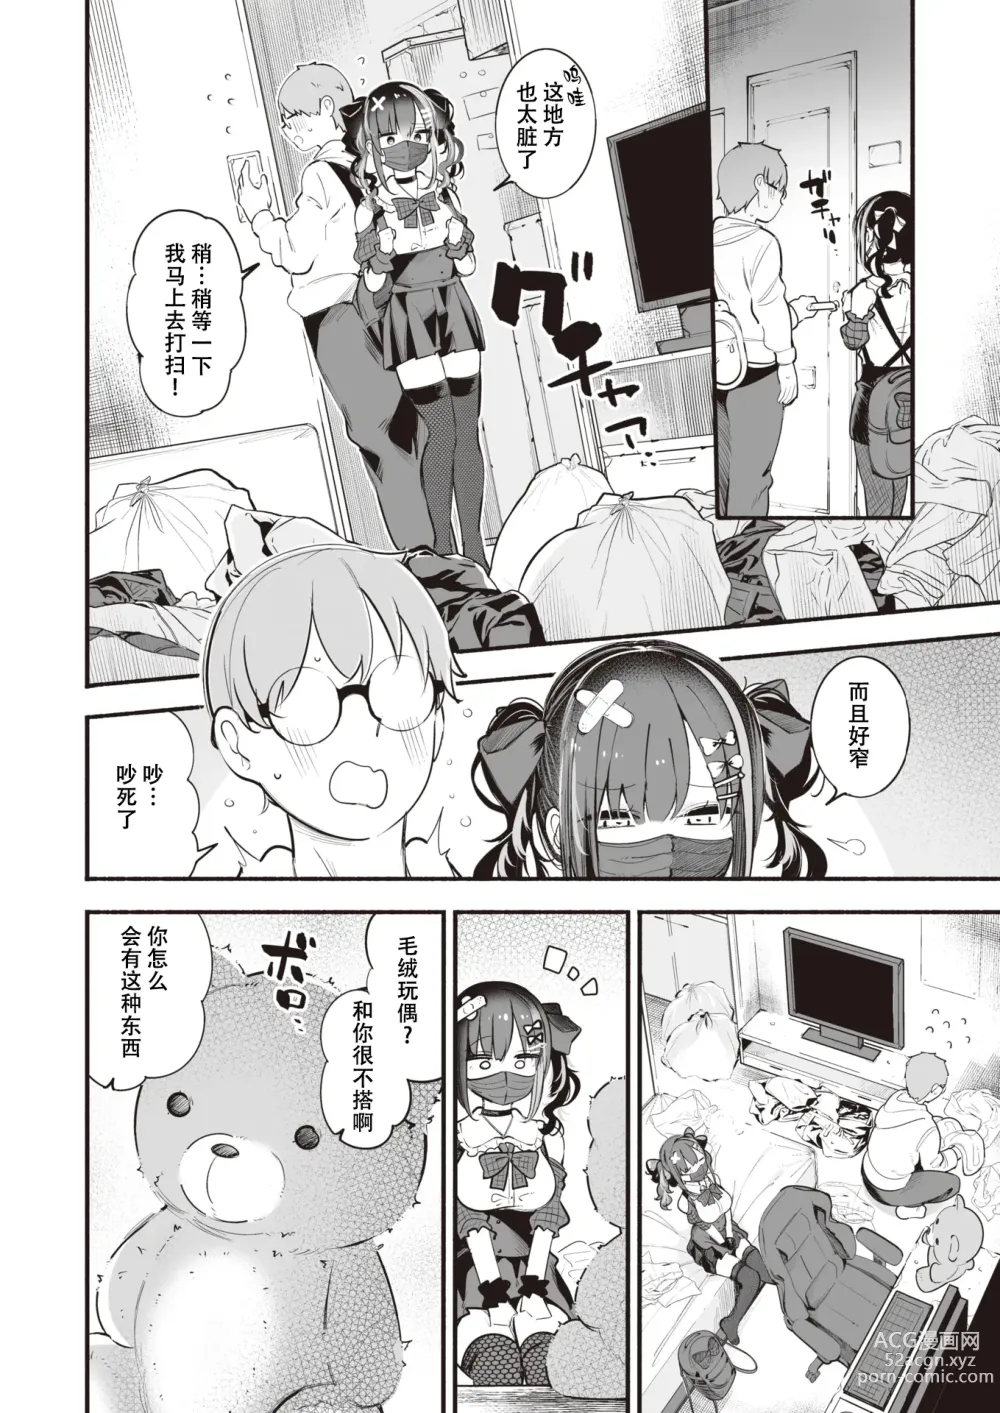 Page 6 of manga 地雷ちゃんは愛を知る